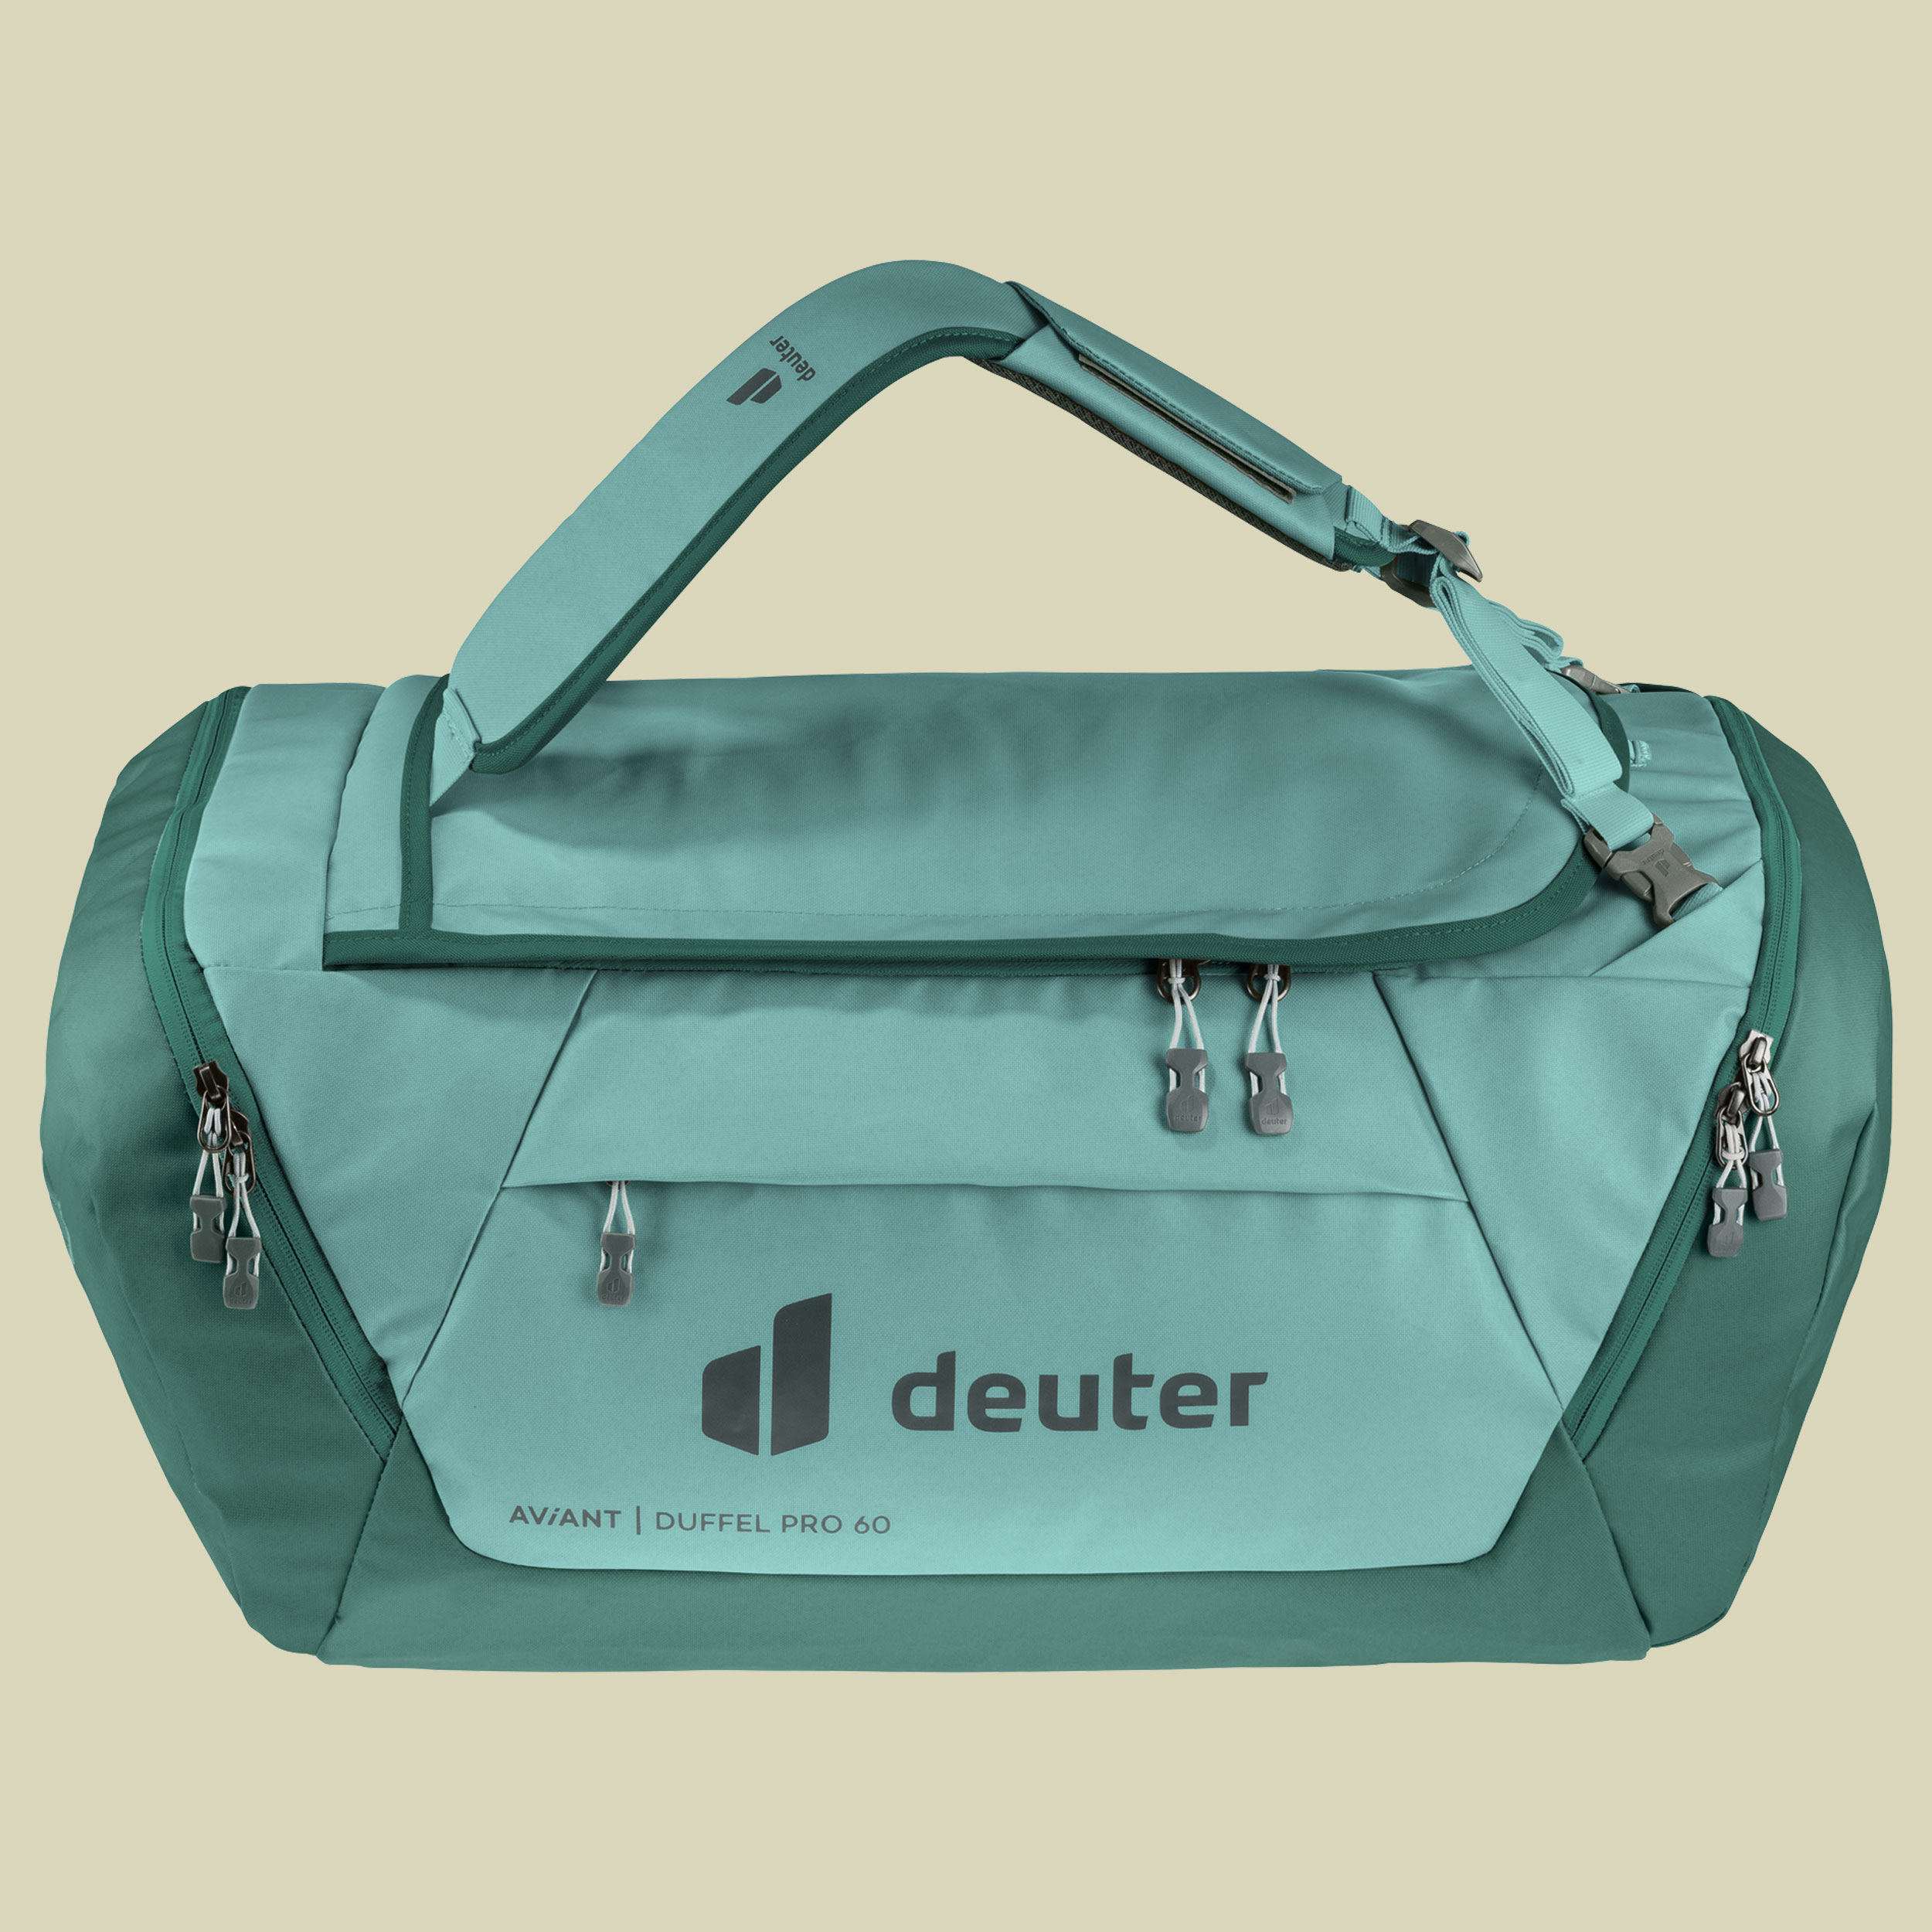 verstaubarem in AViANT Pro Duffel deuter naturzeit Tragesystem- Handgepäcksgröße 40-Reisetasche mit -